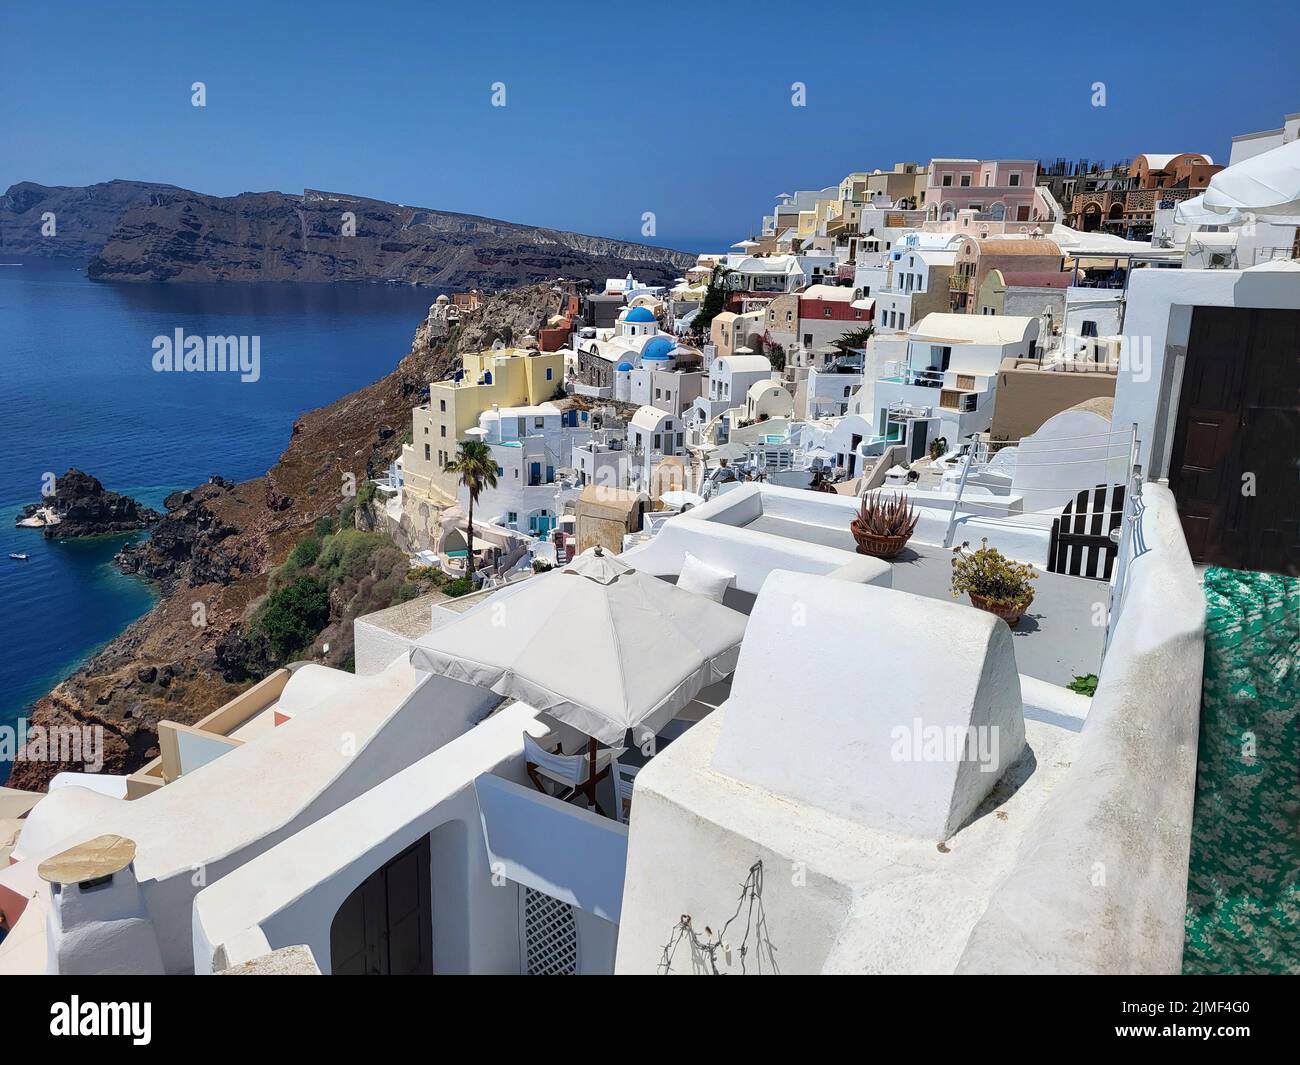 Greece, beautiful view over Oia town in Santorini Island Stock Photo